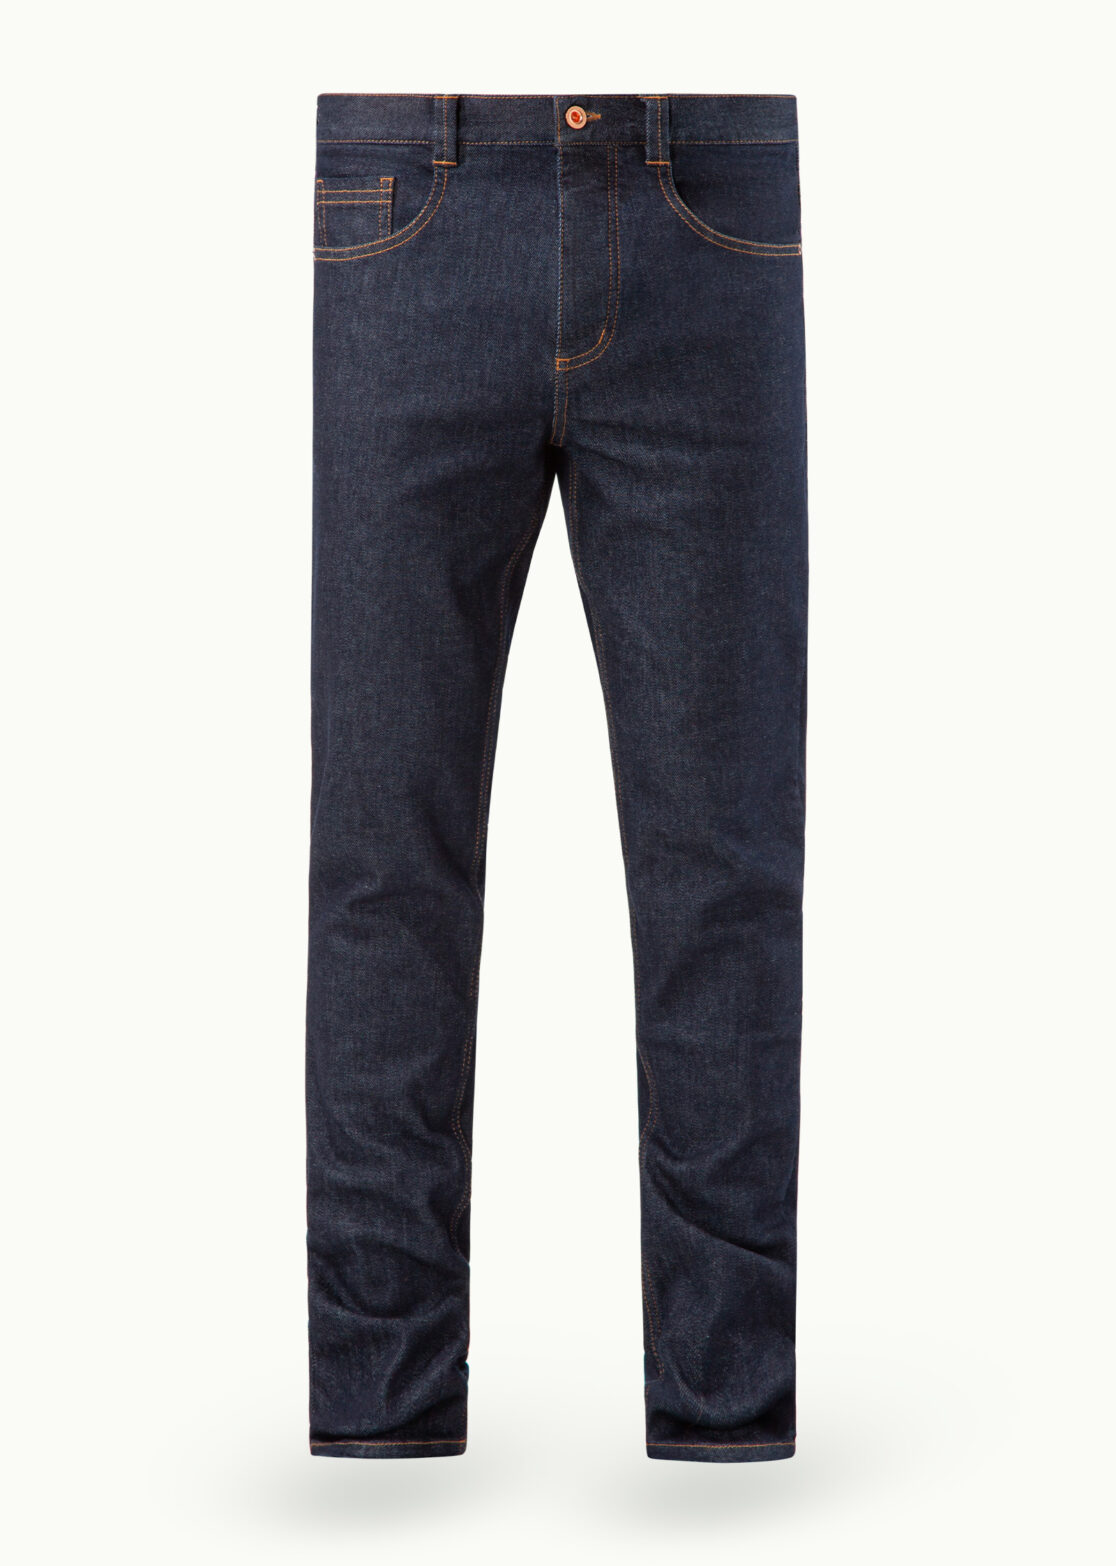 SALE - Men - Denim - Jeans - Tempus Jeans 13oz Blue Pacific Image Primary